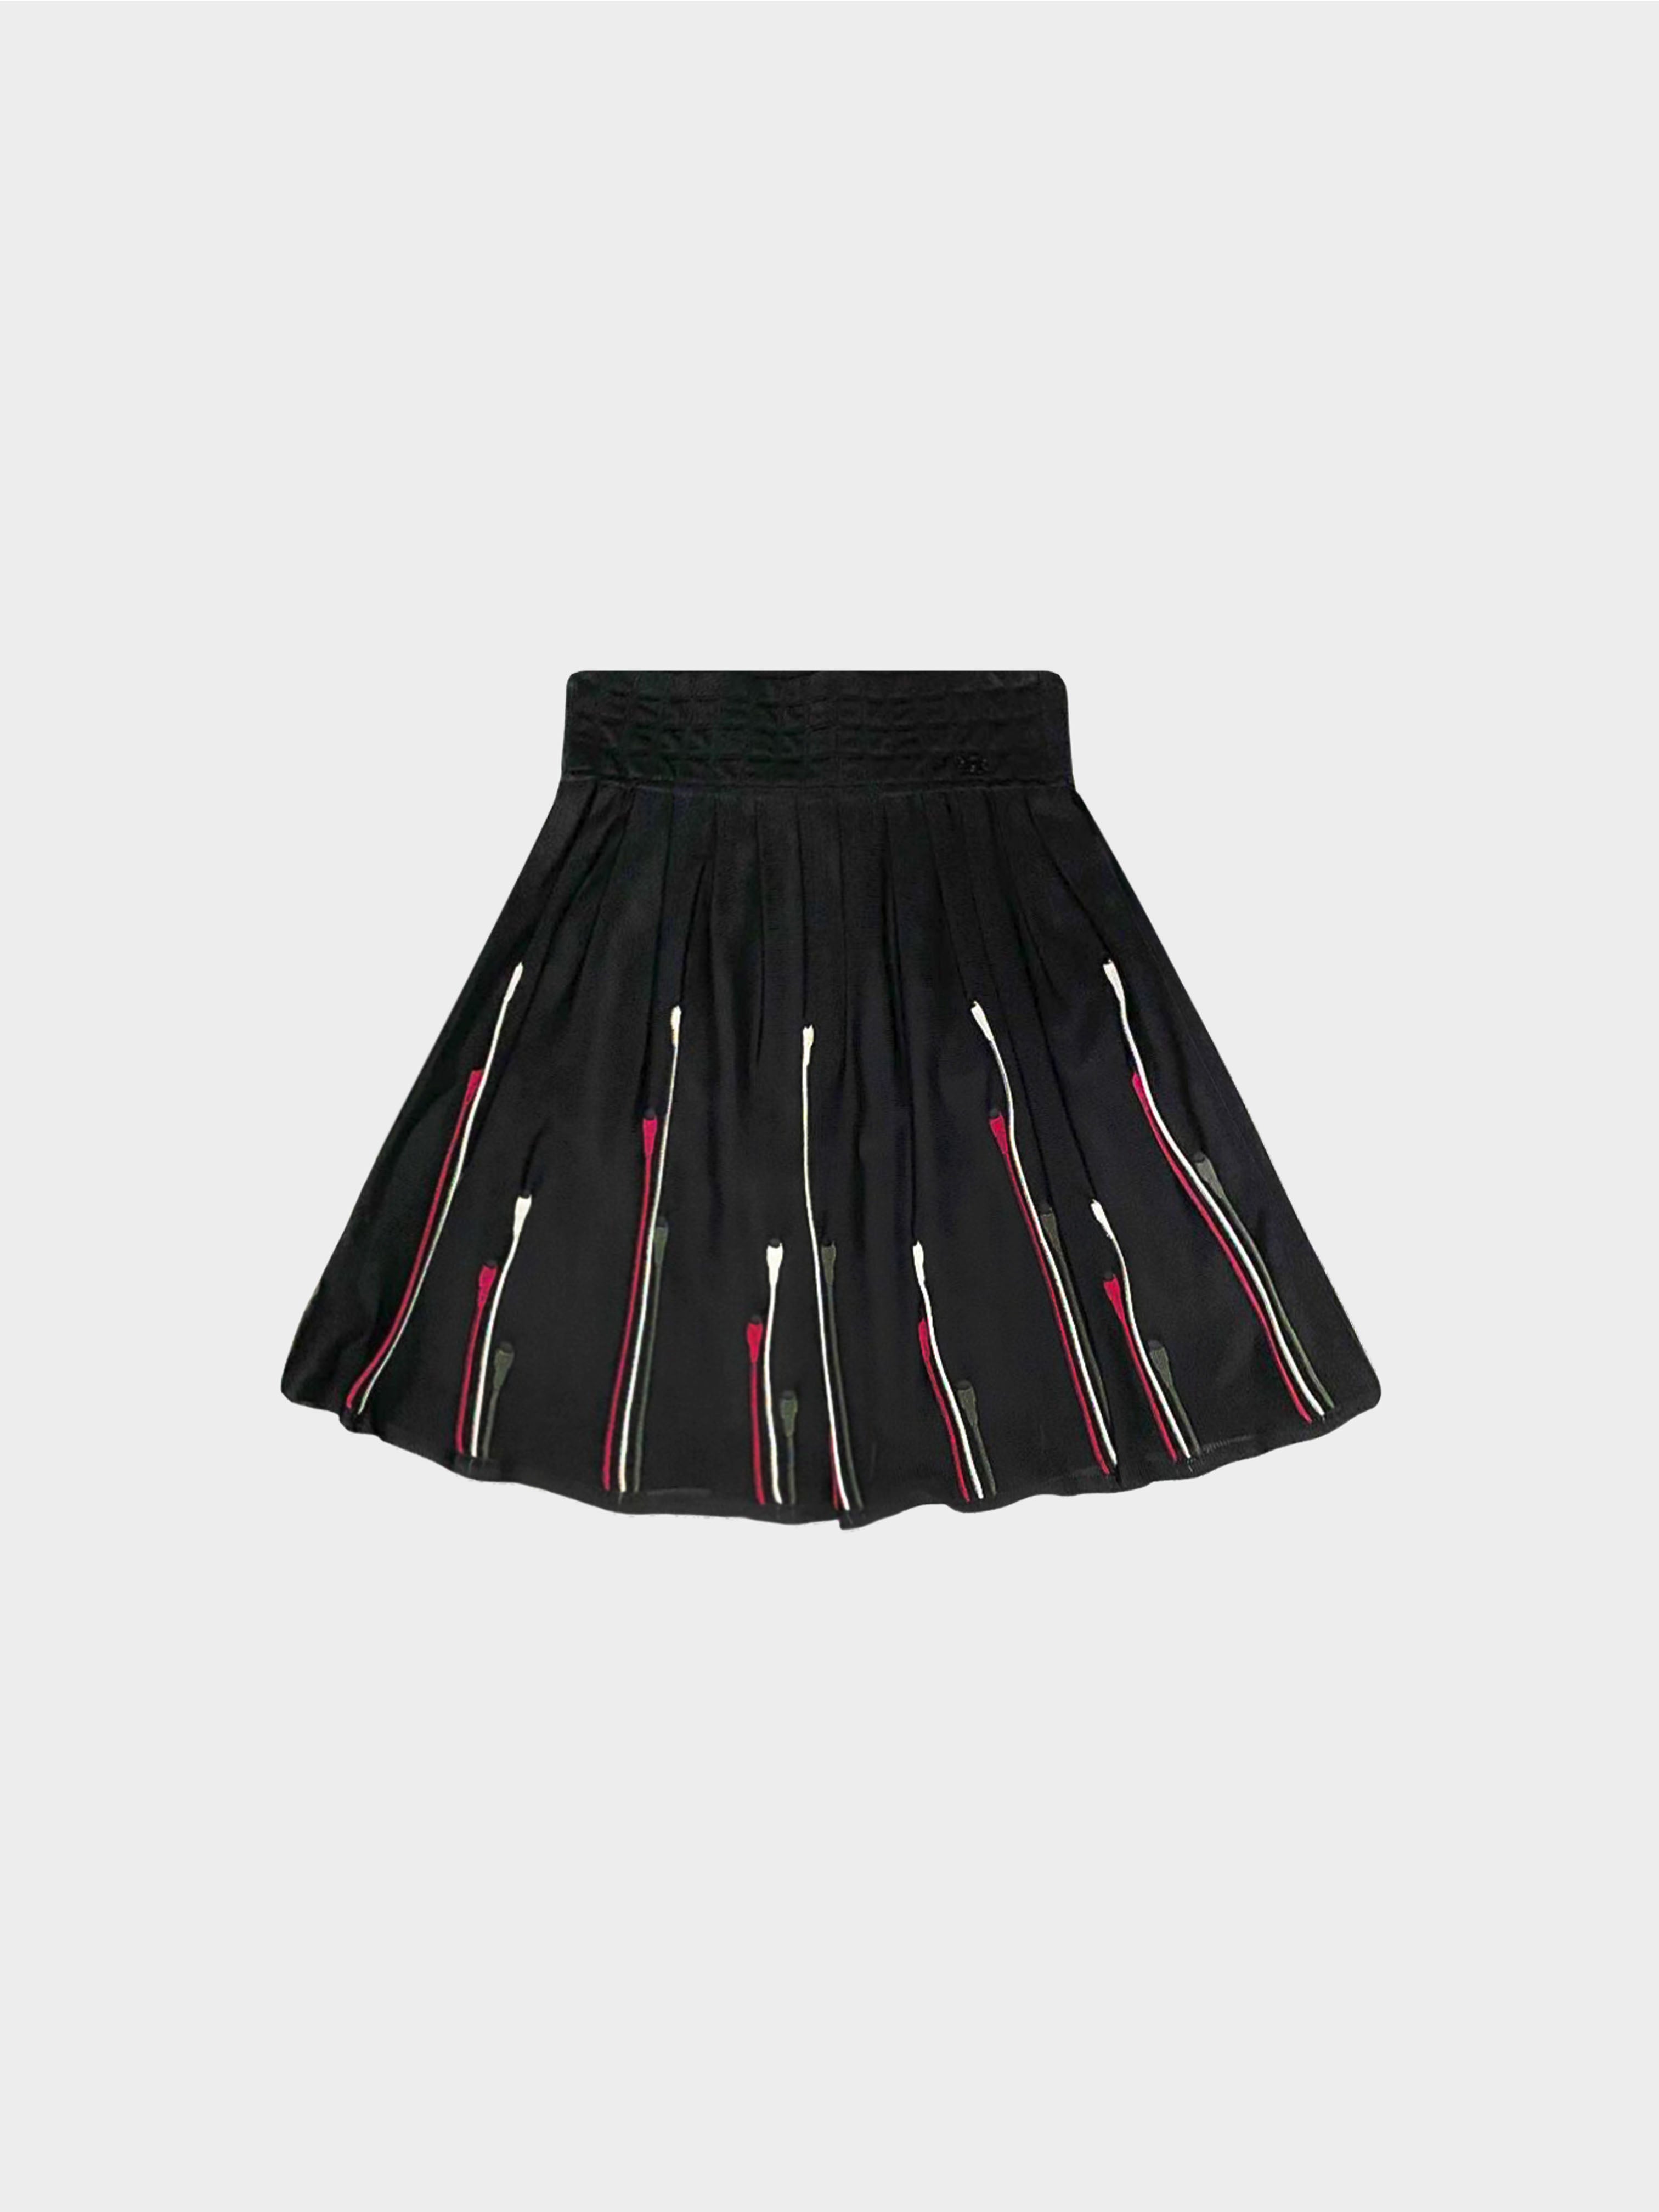 Chanel Spring 2004 Black Flare Mini Skirt